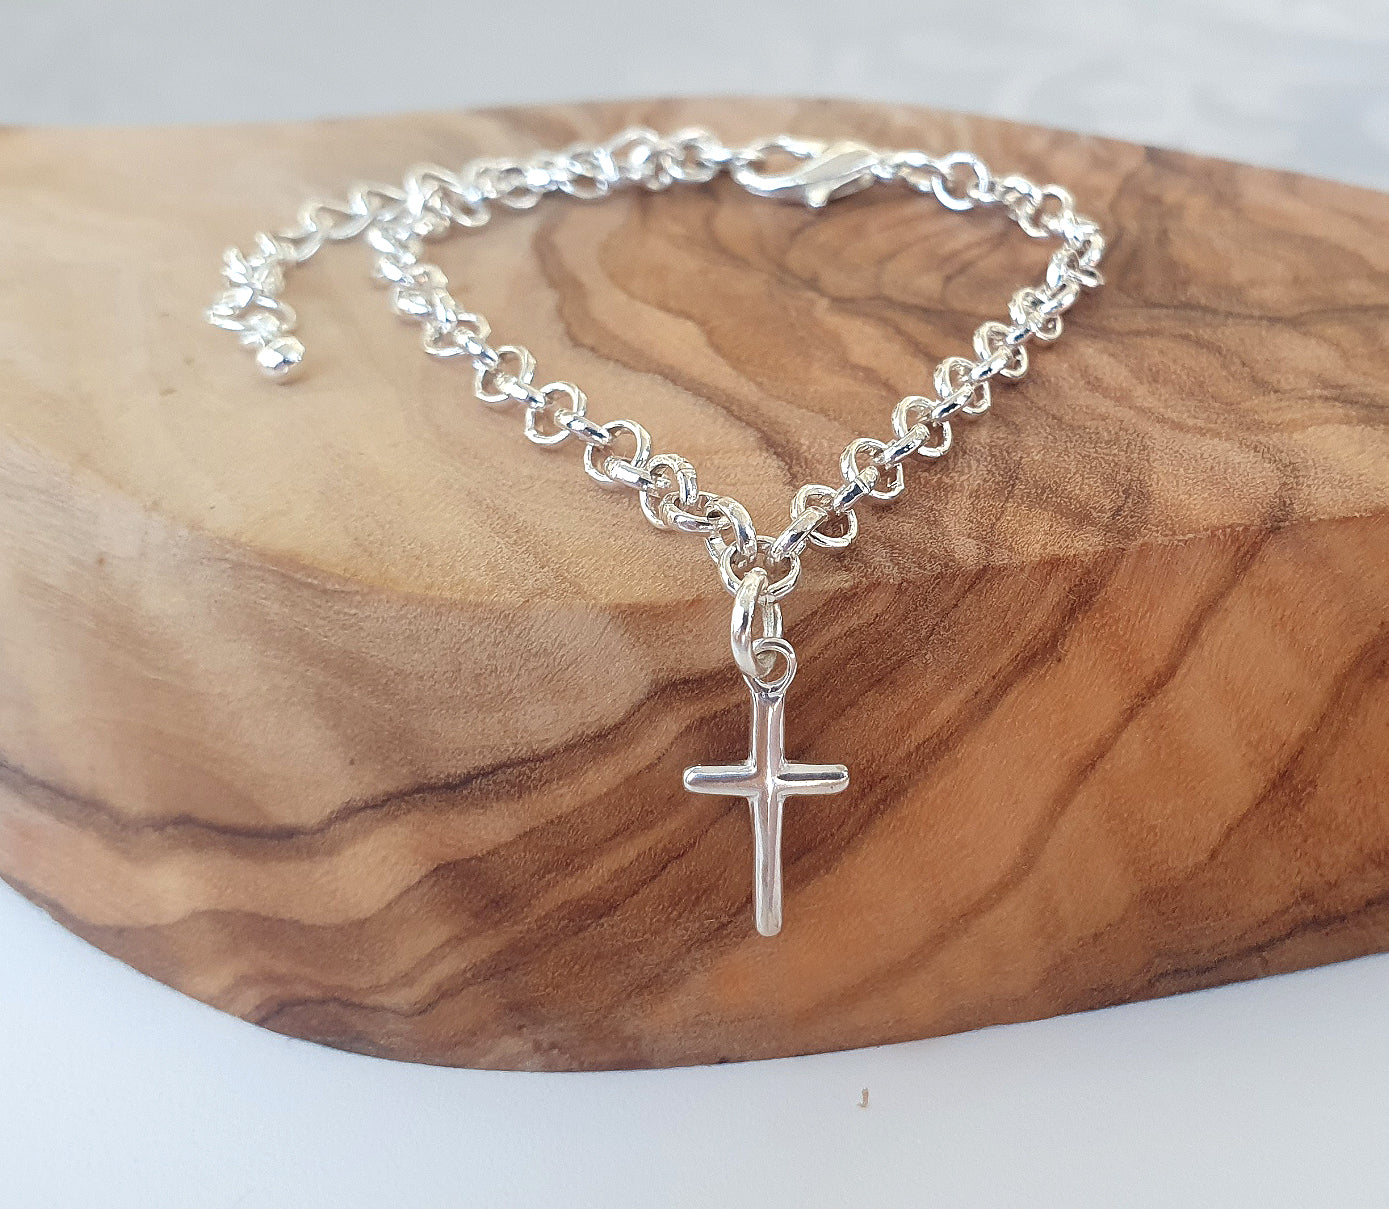 Charmed Cross Link Bracelet, Adjustable for Women and Girl's